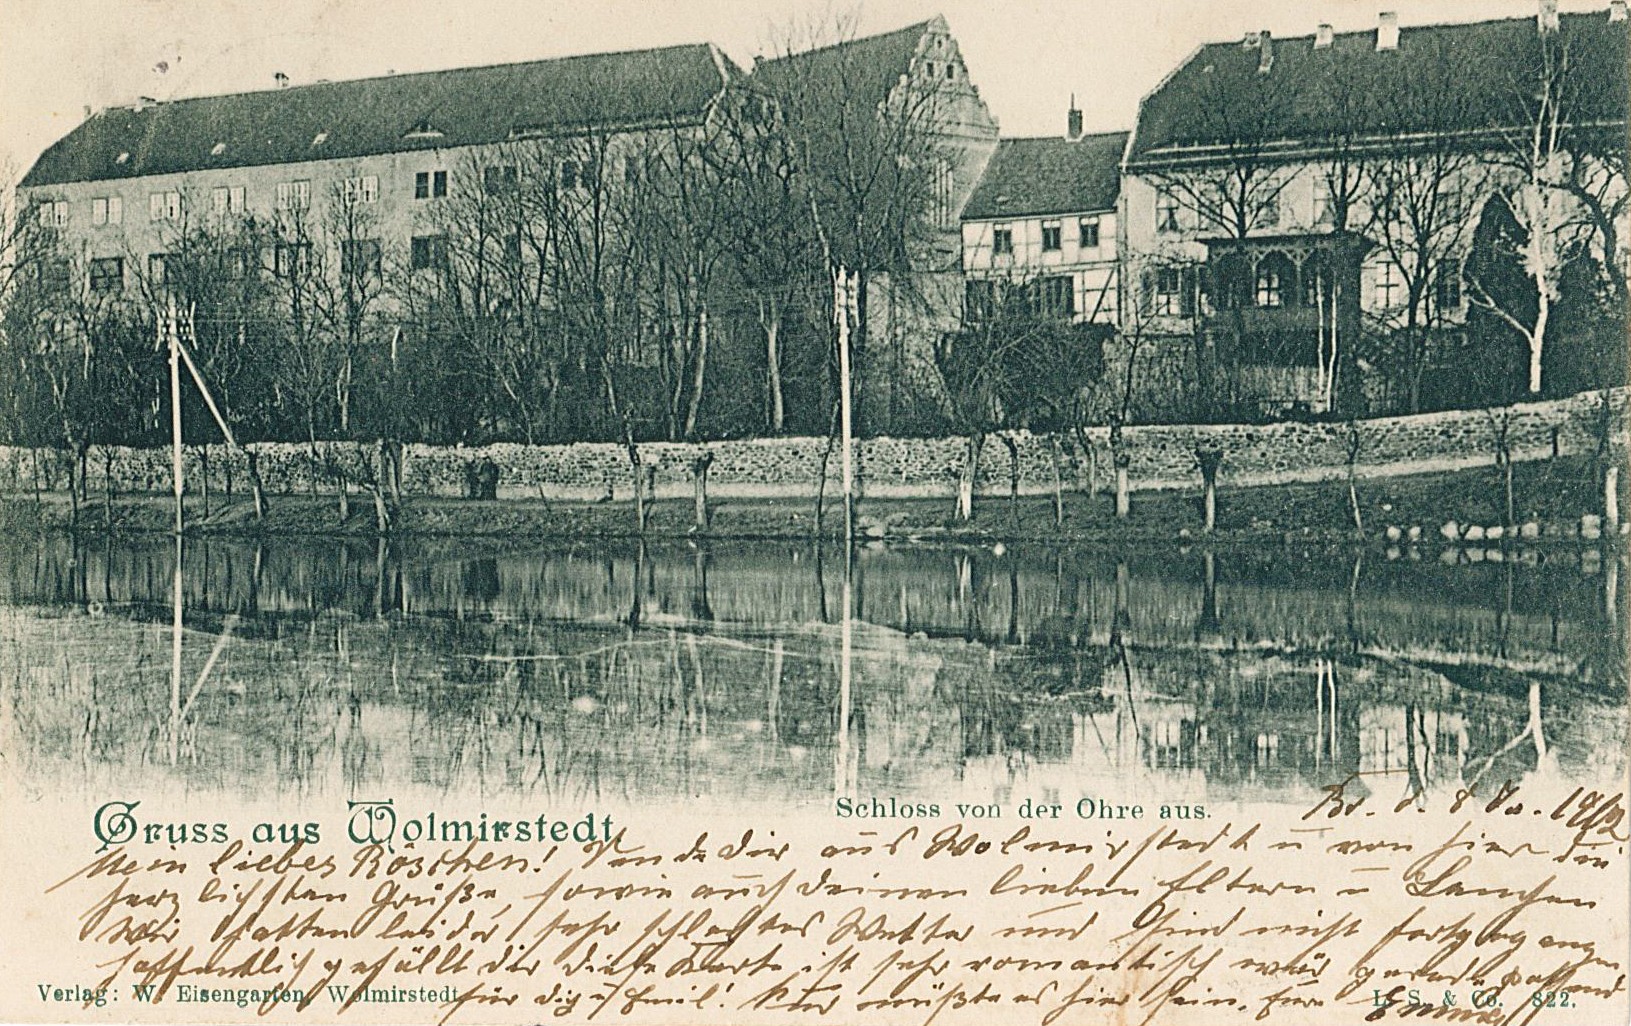 Ansichtskarte "Schloß von der Ohre aus, Wolmirstedt", 08.01.1902 (Museum Wolmirstedt RR-F)